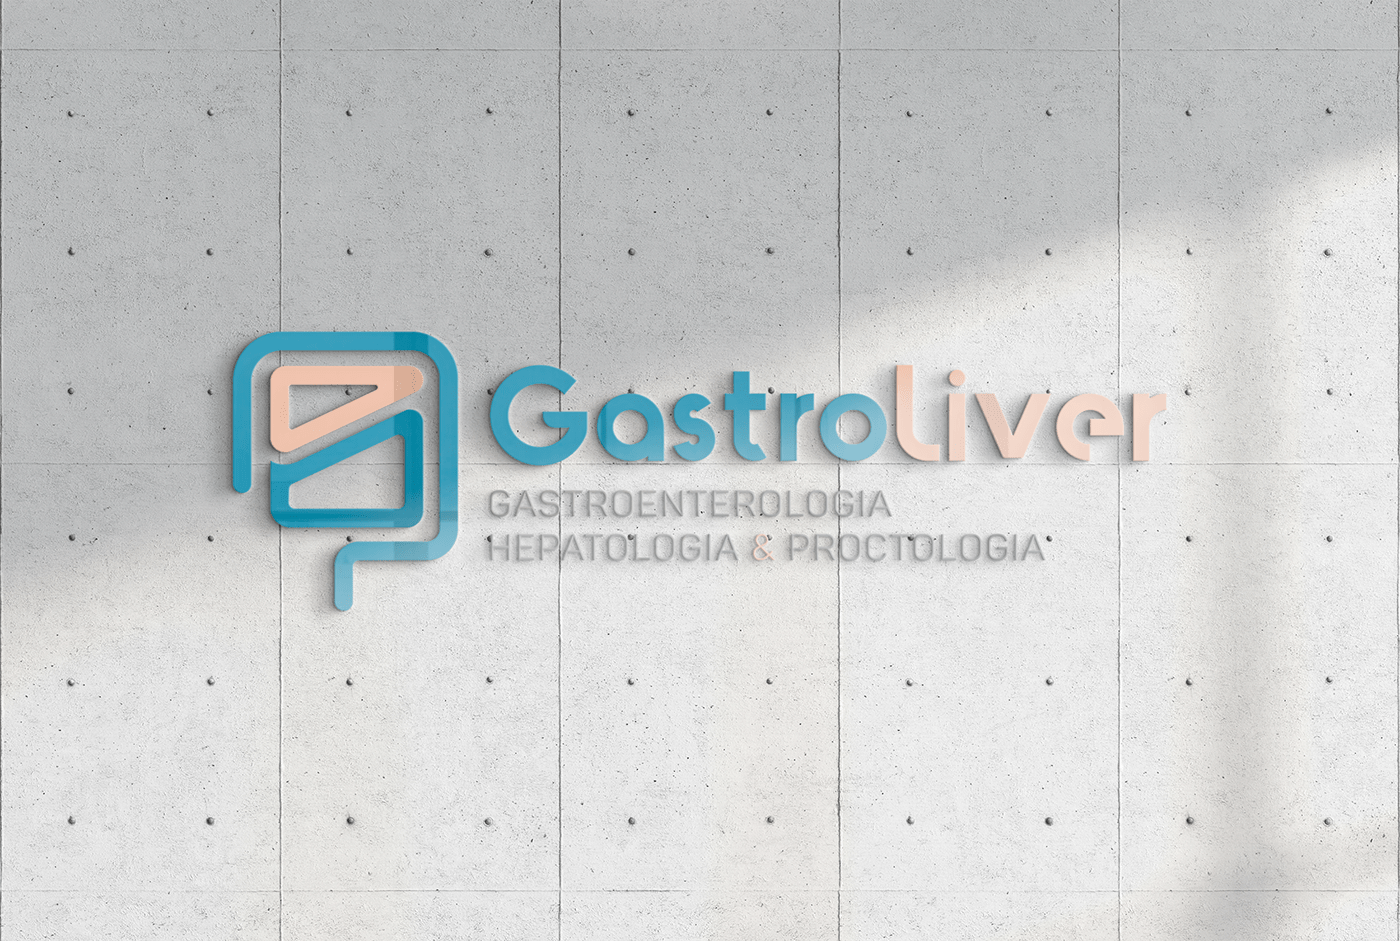 gastro gastroenterología gastroenterologista hepatologia Intestino liver medica medico proctologia  valéria dantas